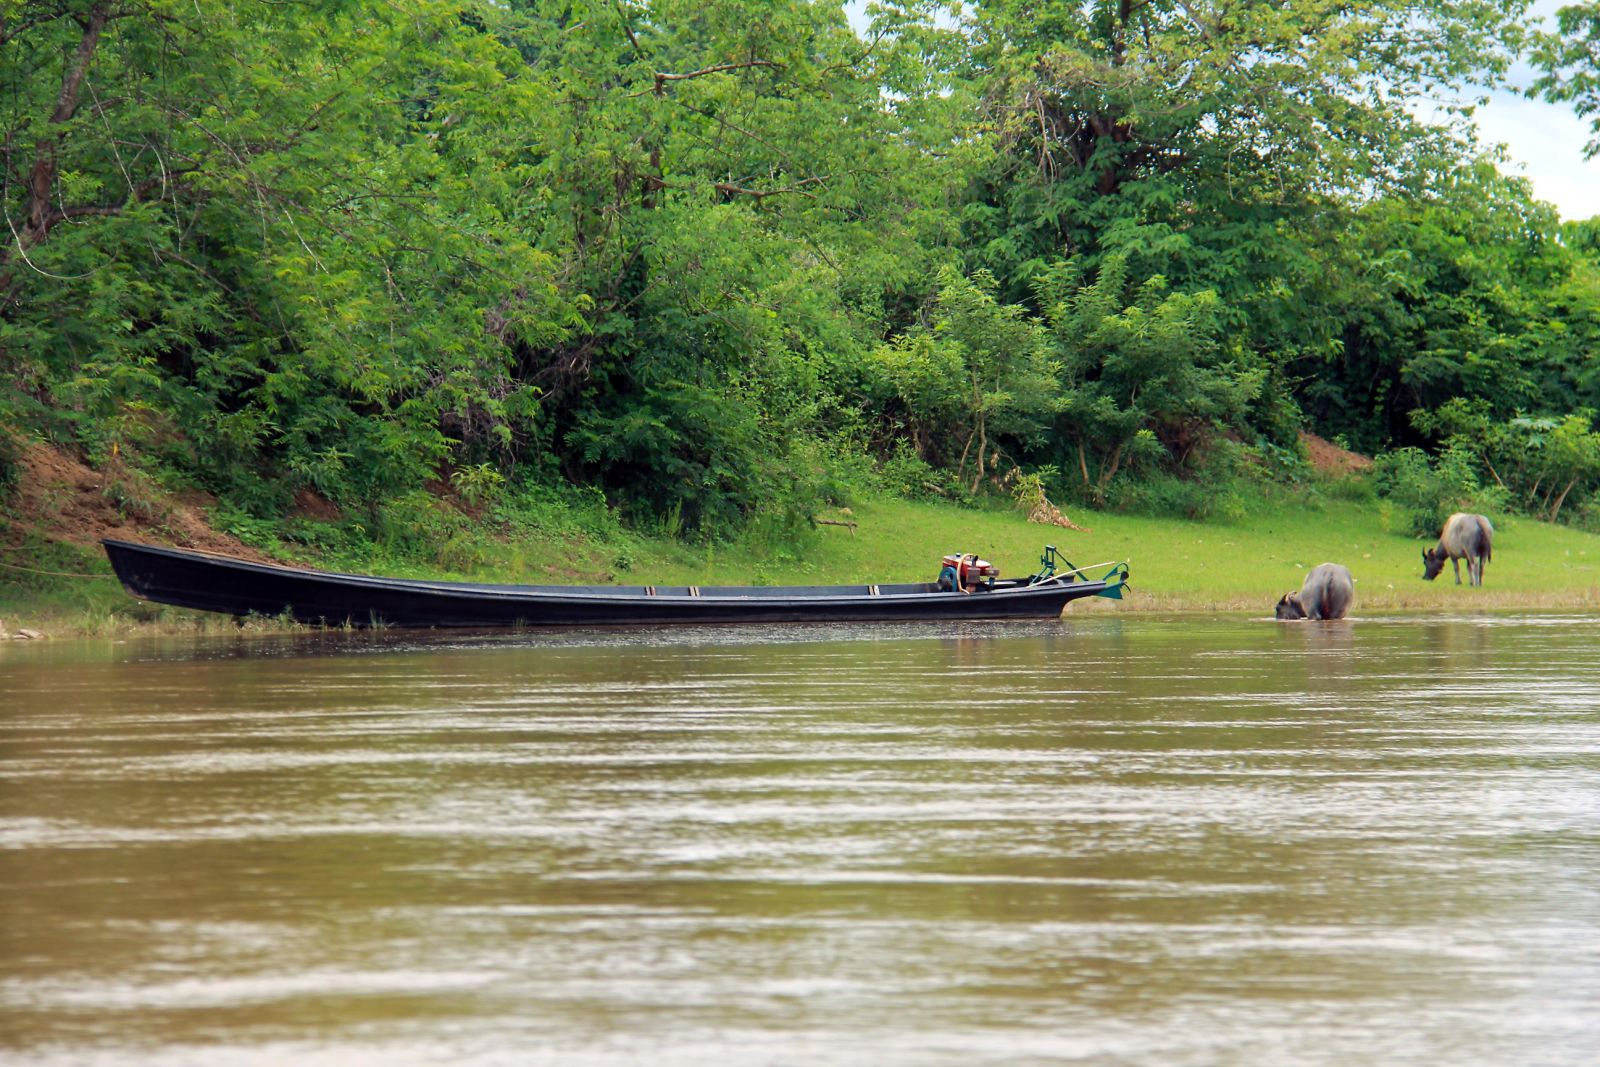 Anlandung mit dem Langboot am Flussufer